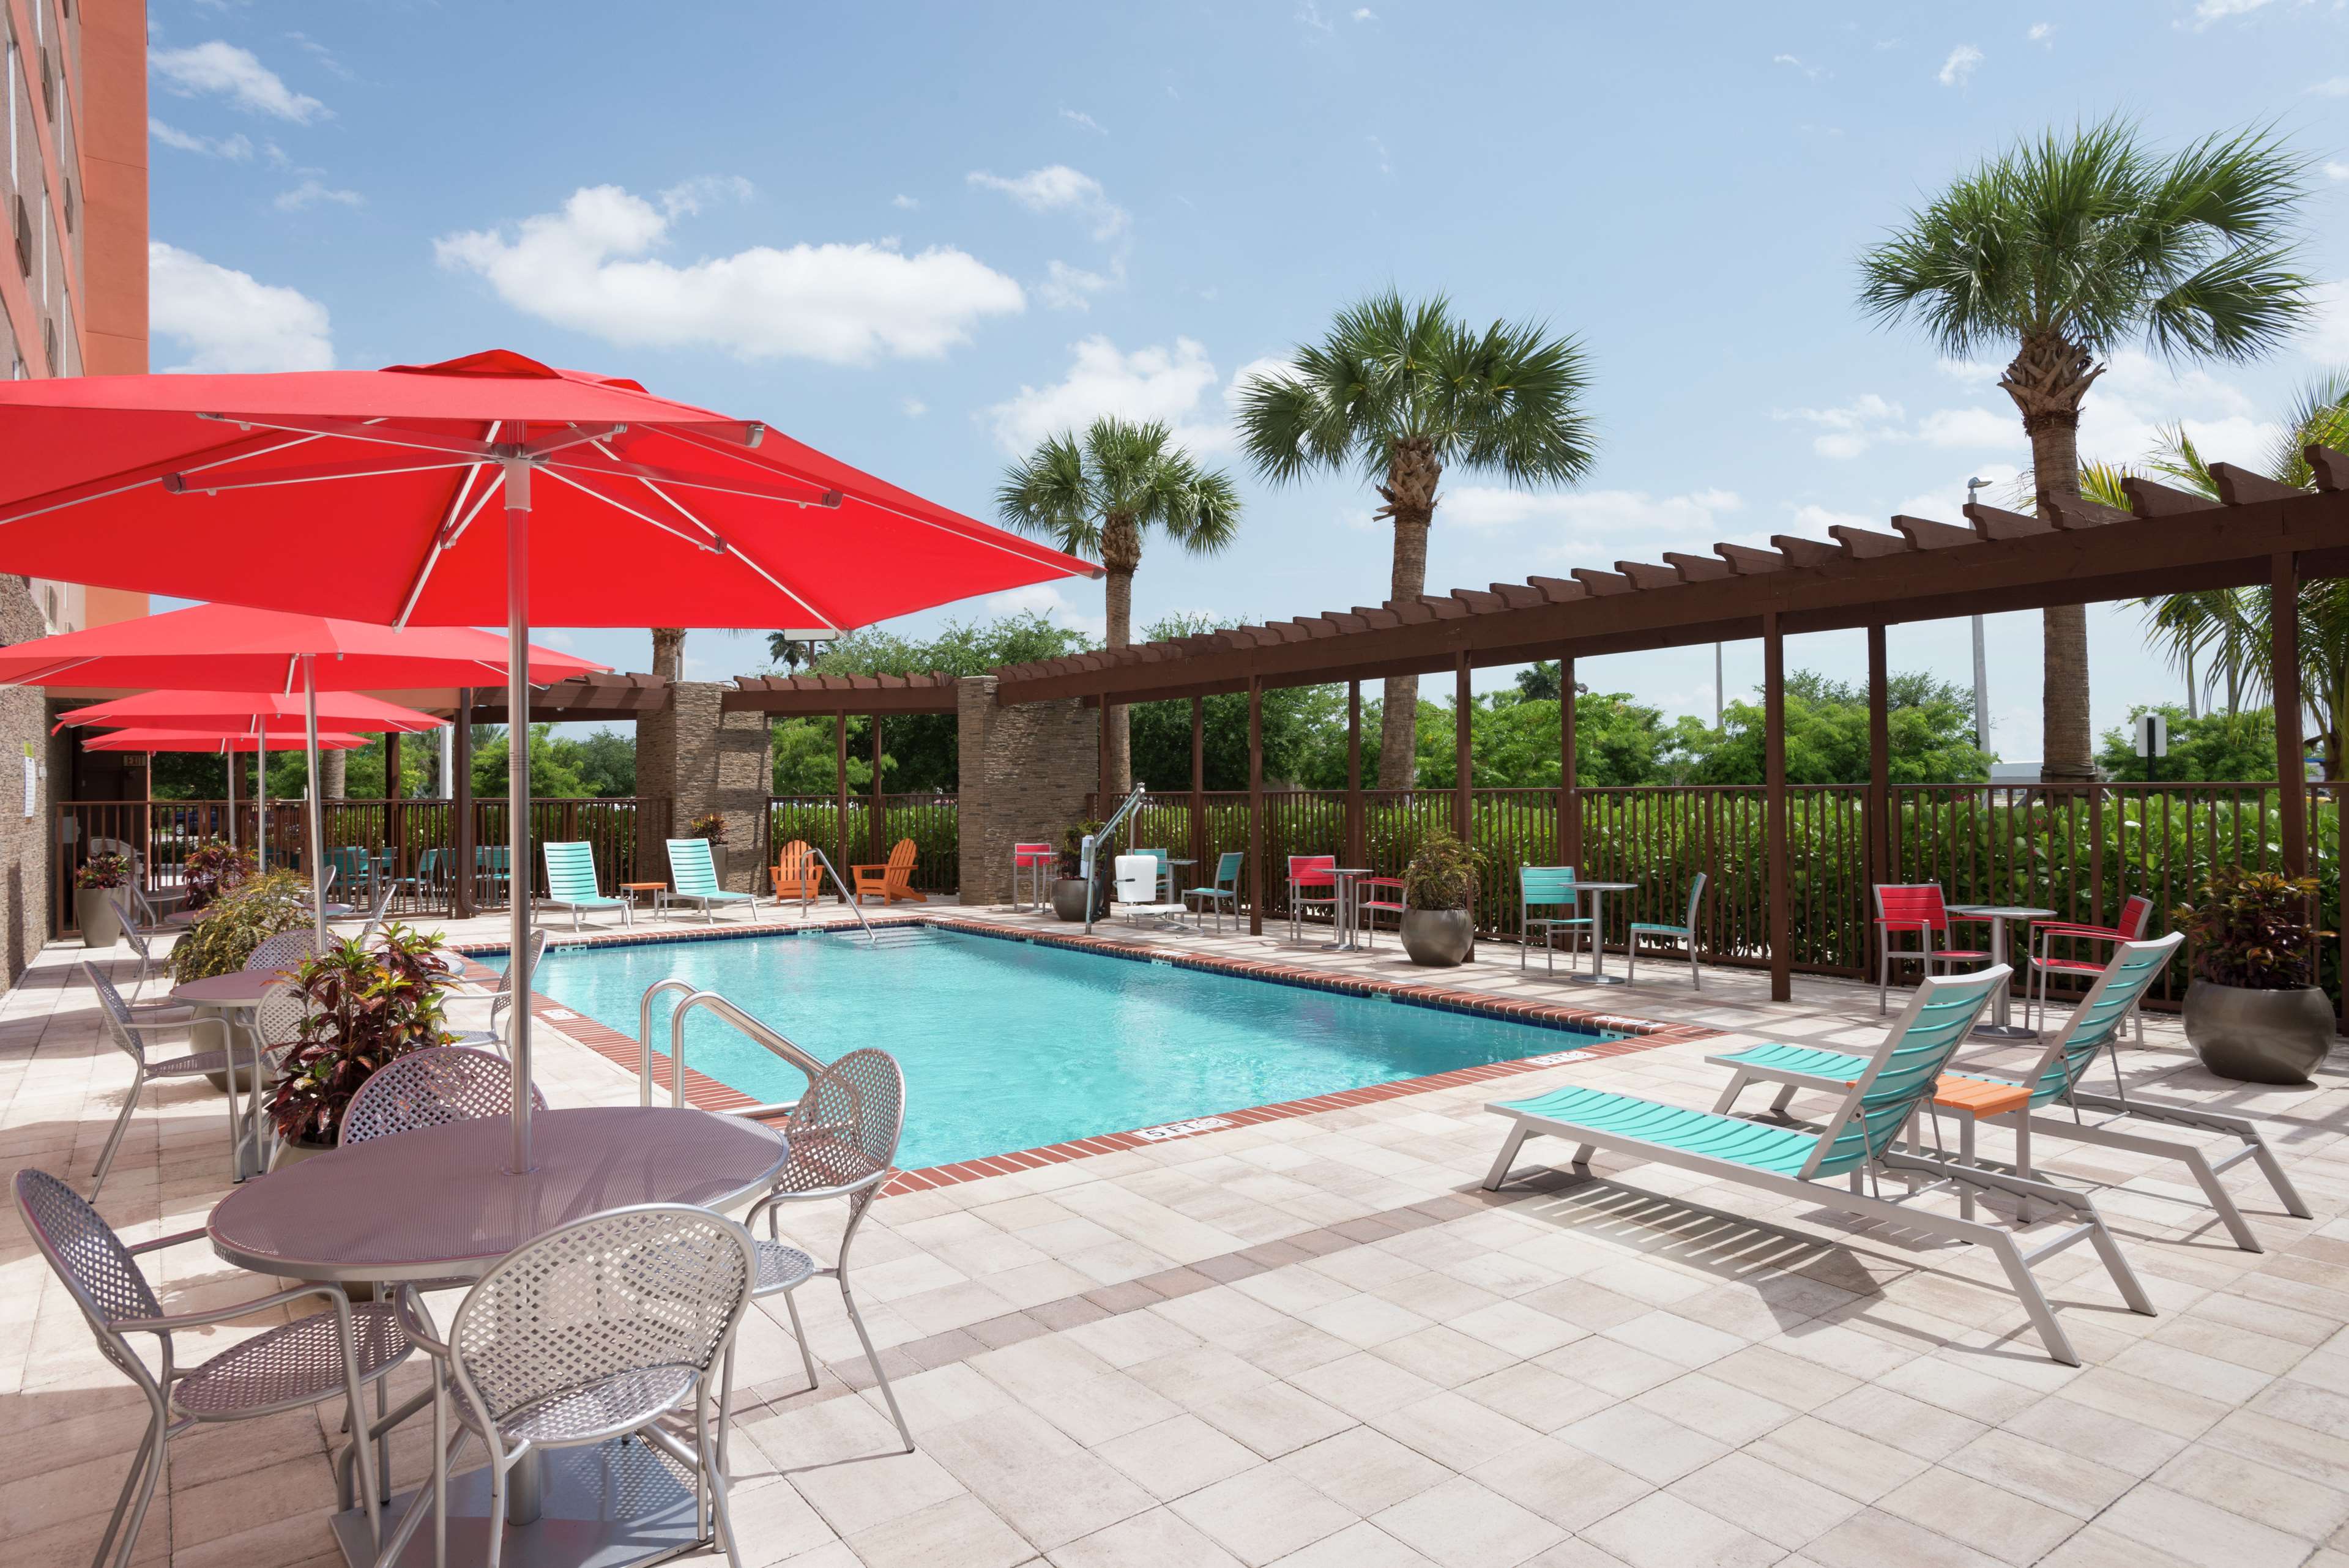 Home2 Suites by Hilton Florida City, FL